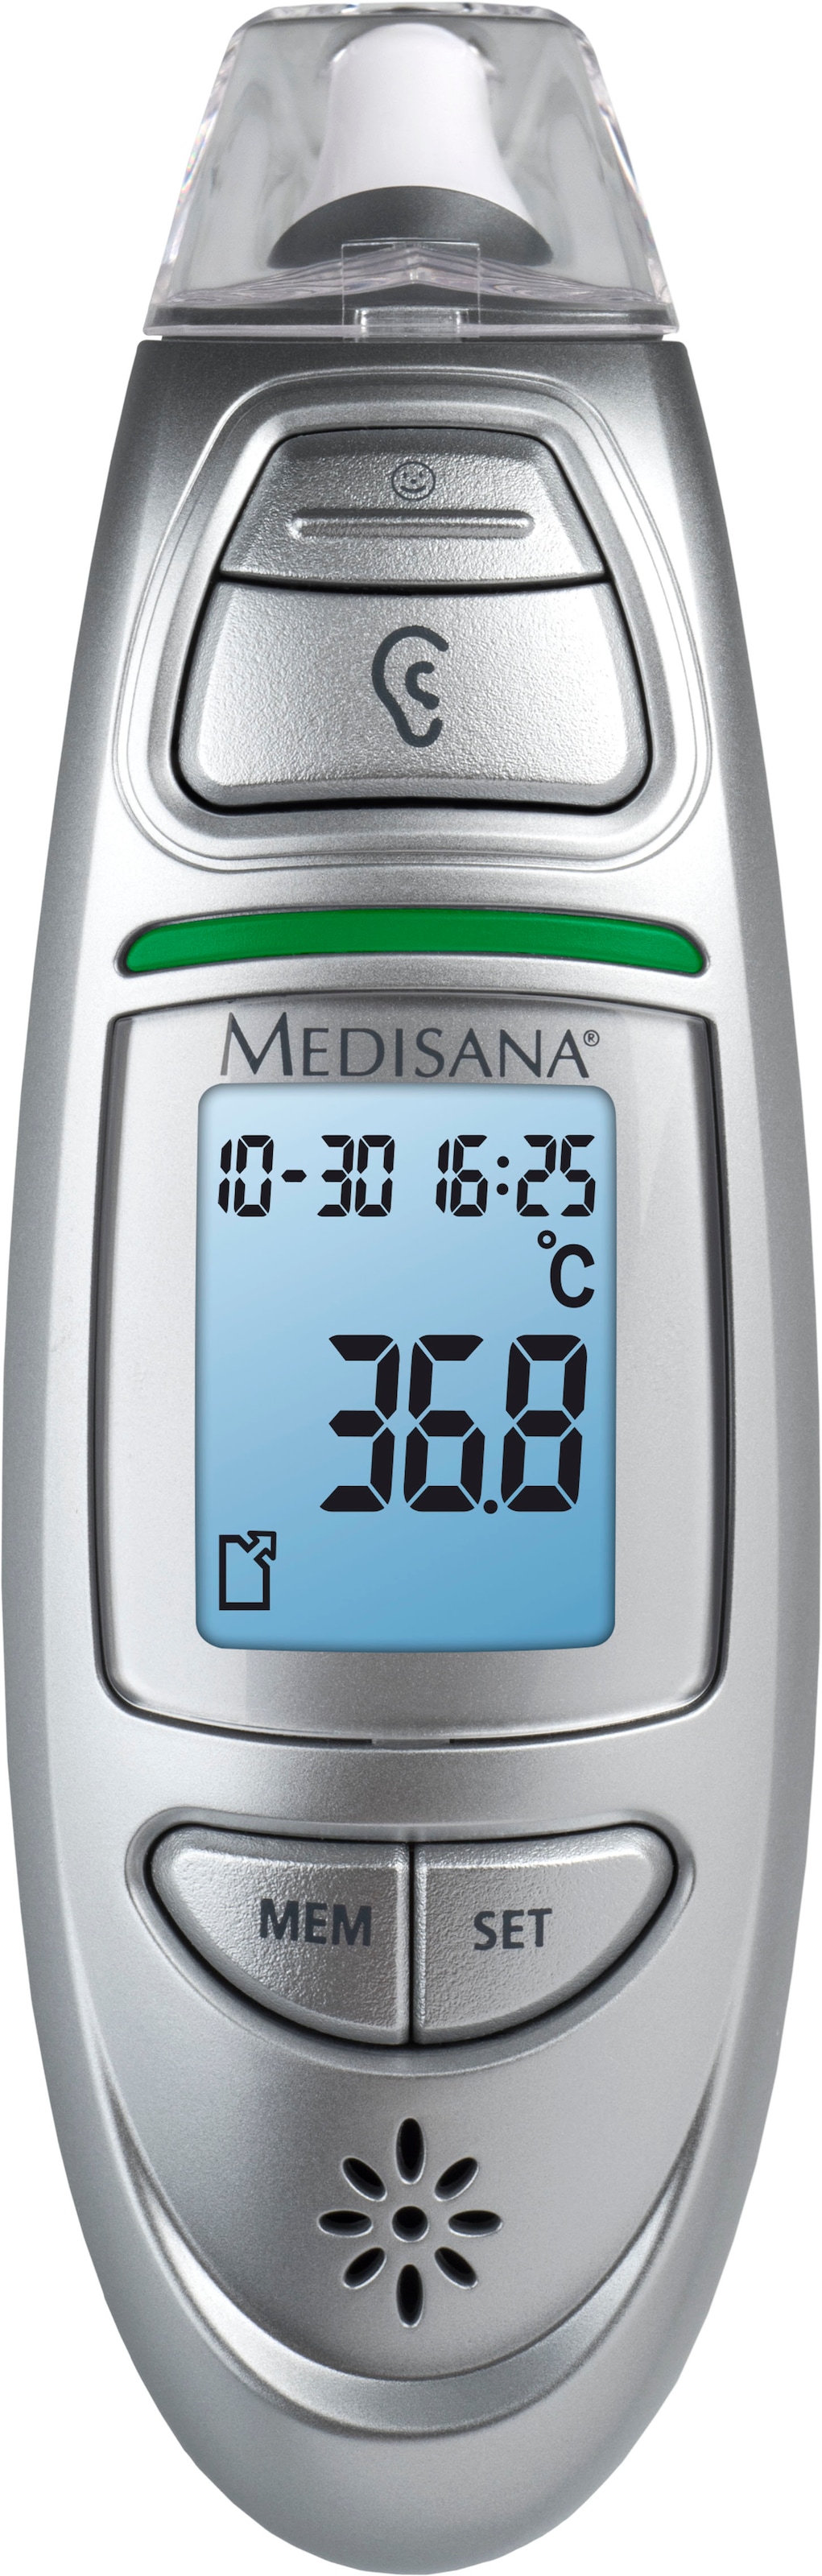 Medisana Fieberthermometer »TM 750 Connect« online kaufen bei OTTO